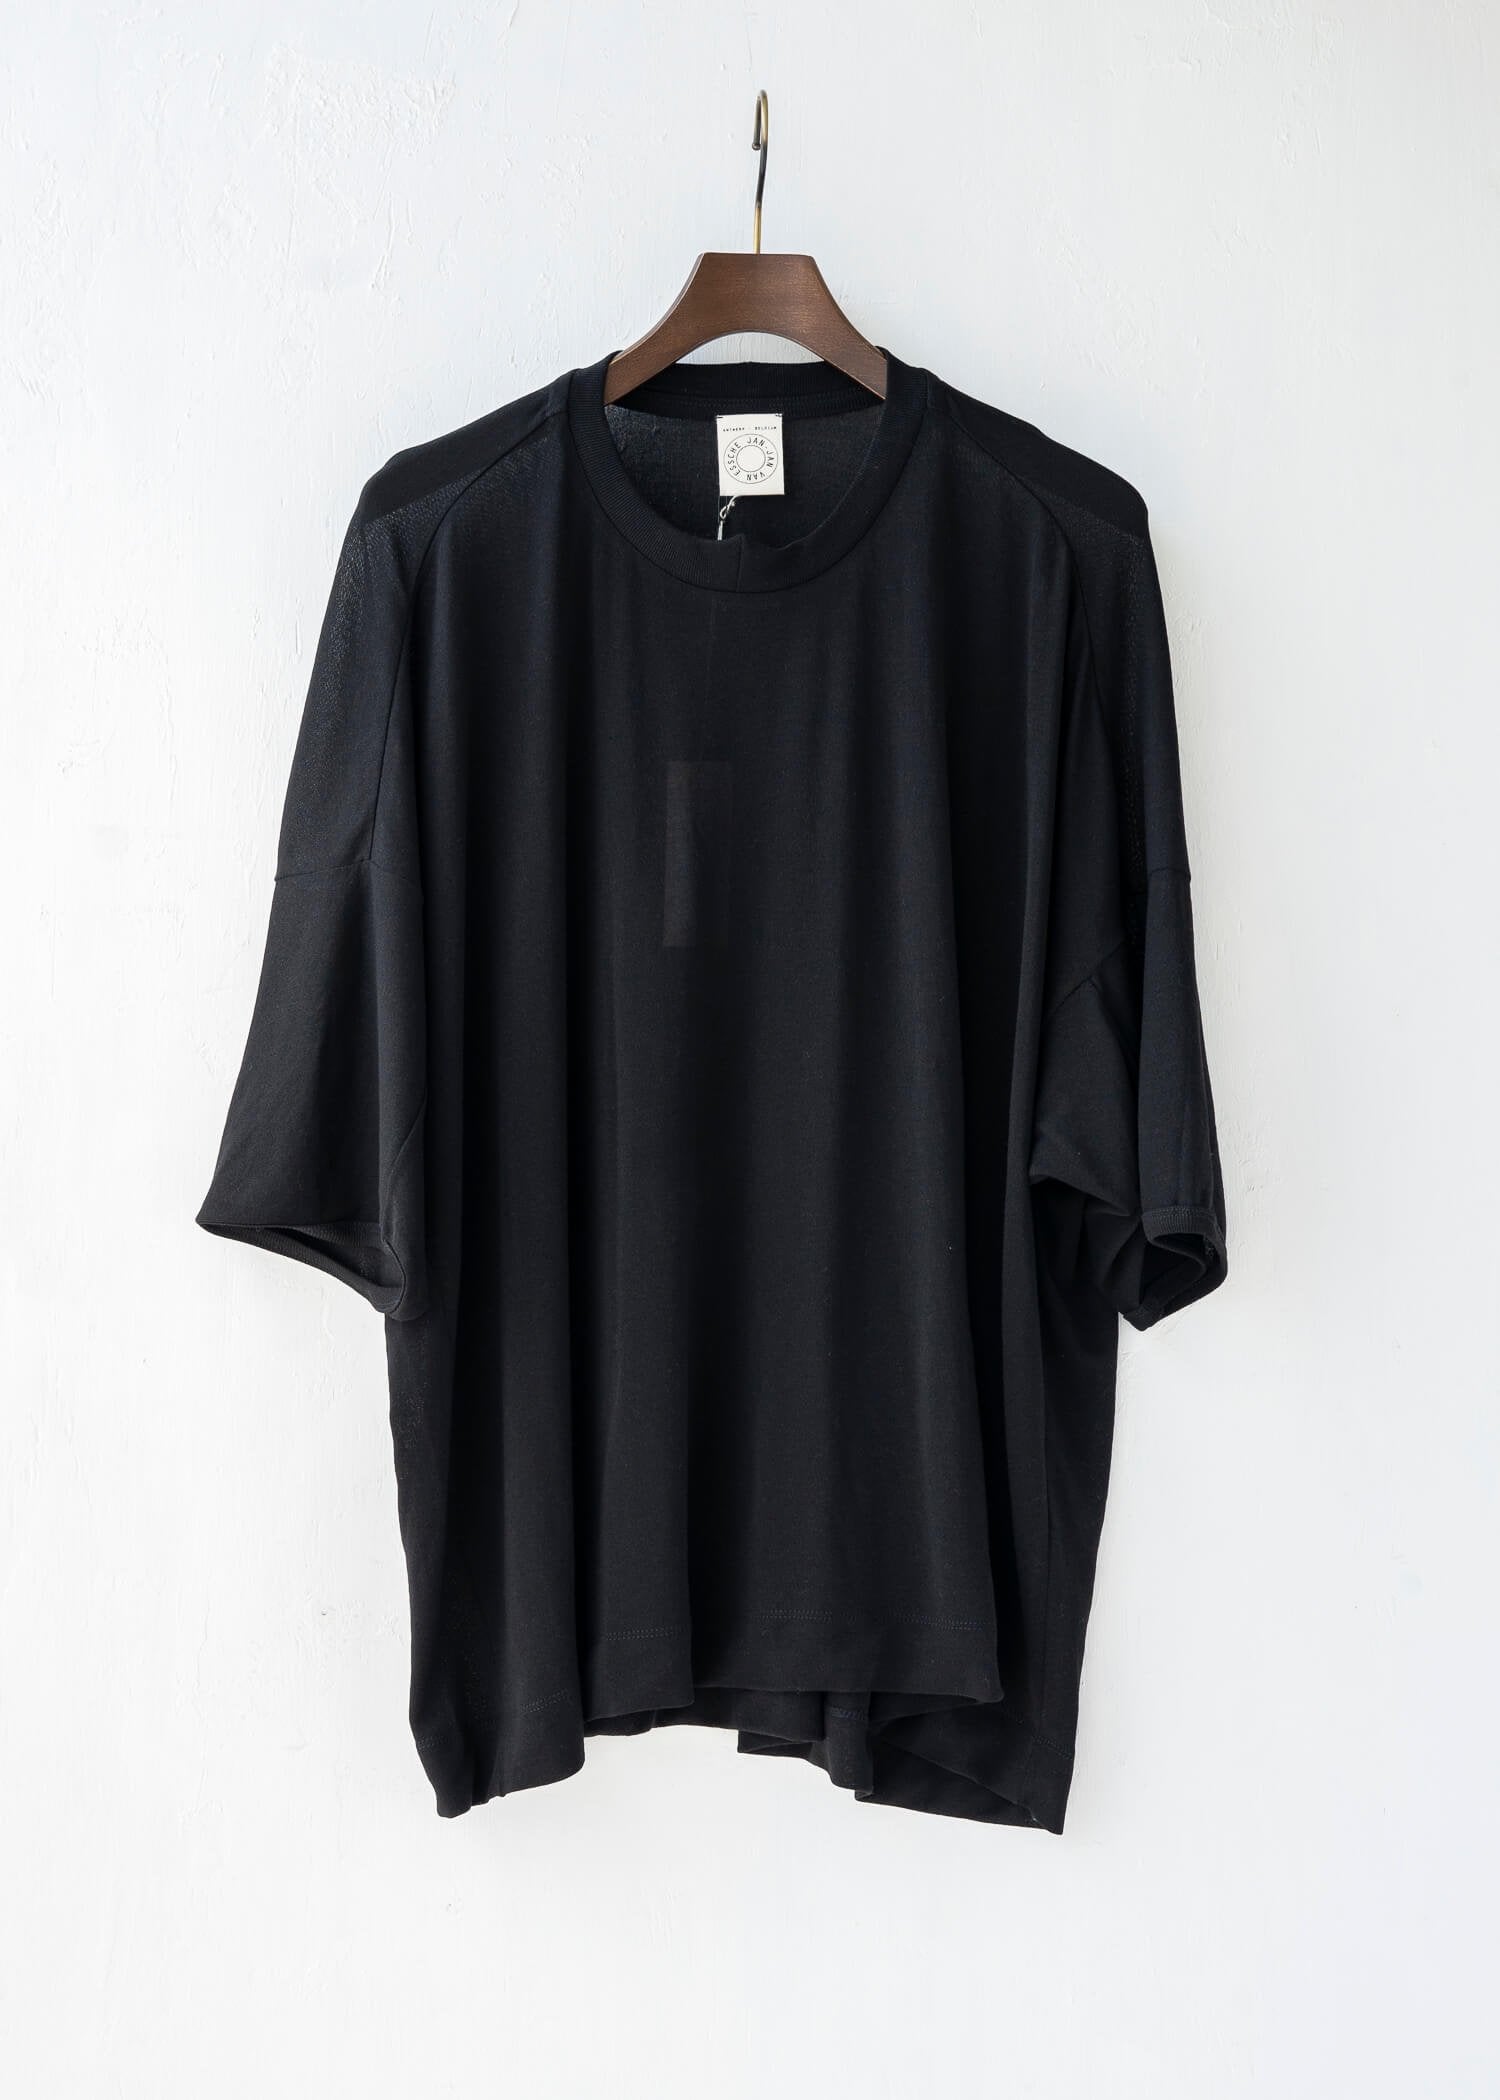 JAN-JAN VAN ESSCHE / “TEE#60”宽版 T 恤 / 黑色 / WA/CO 球衣